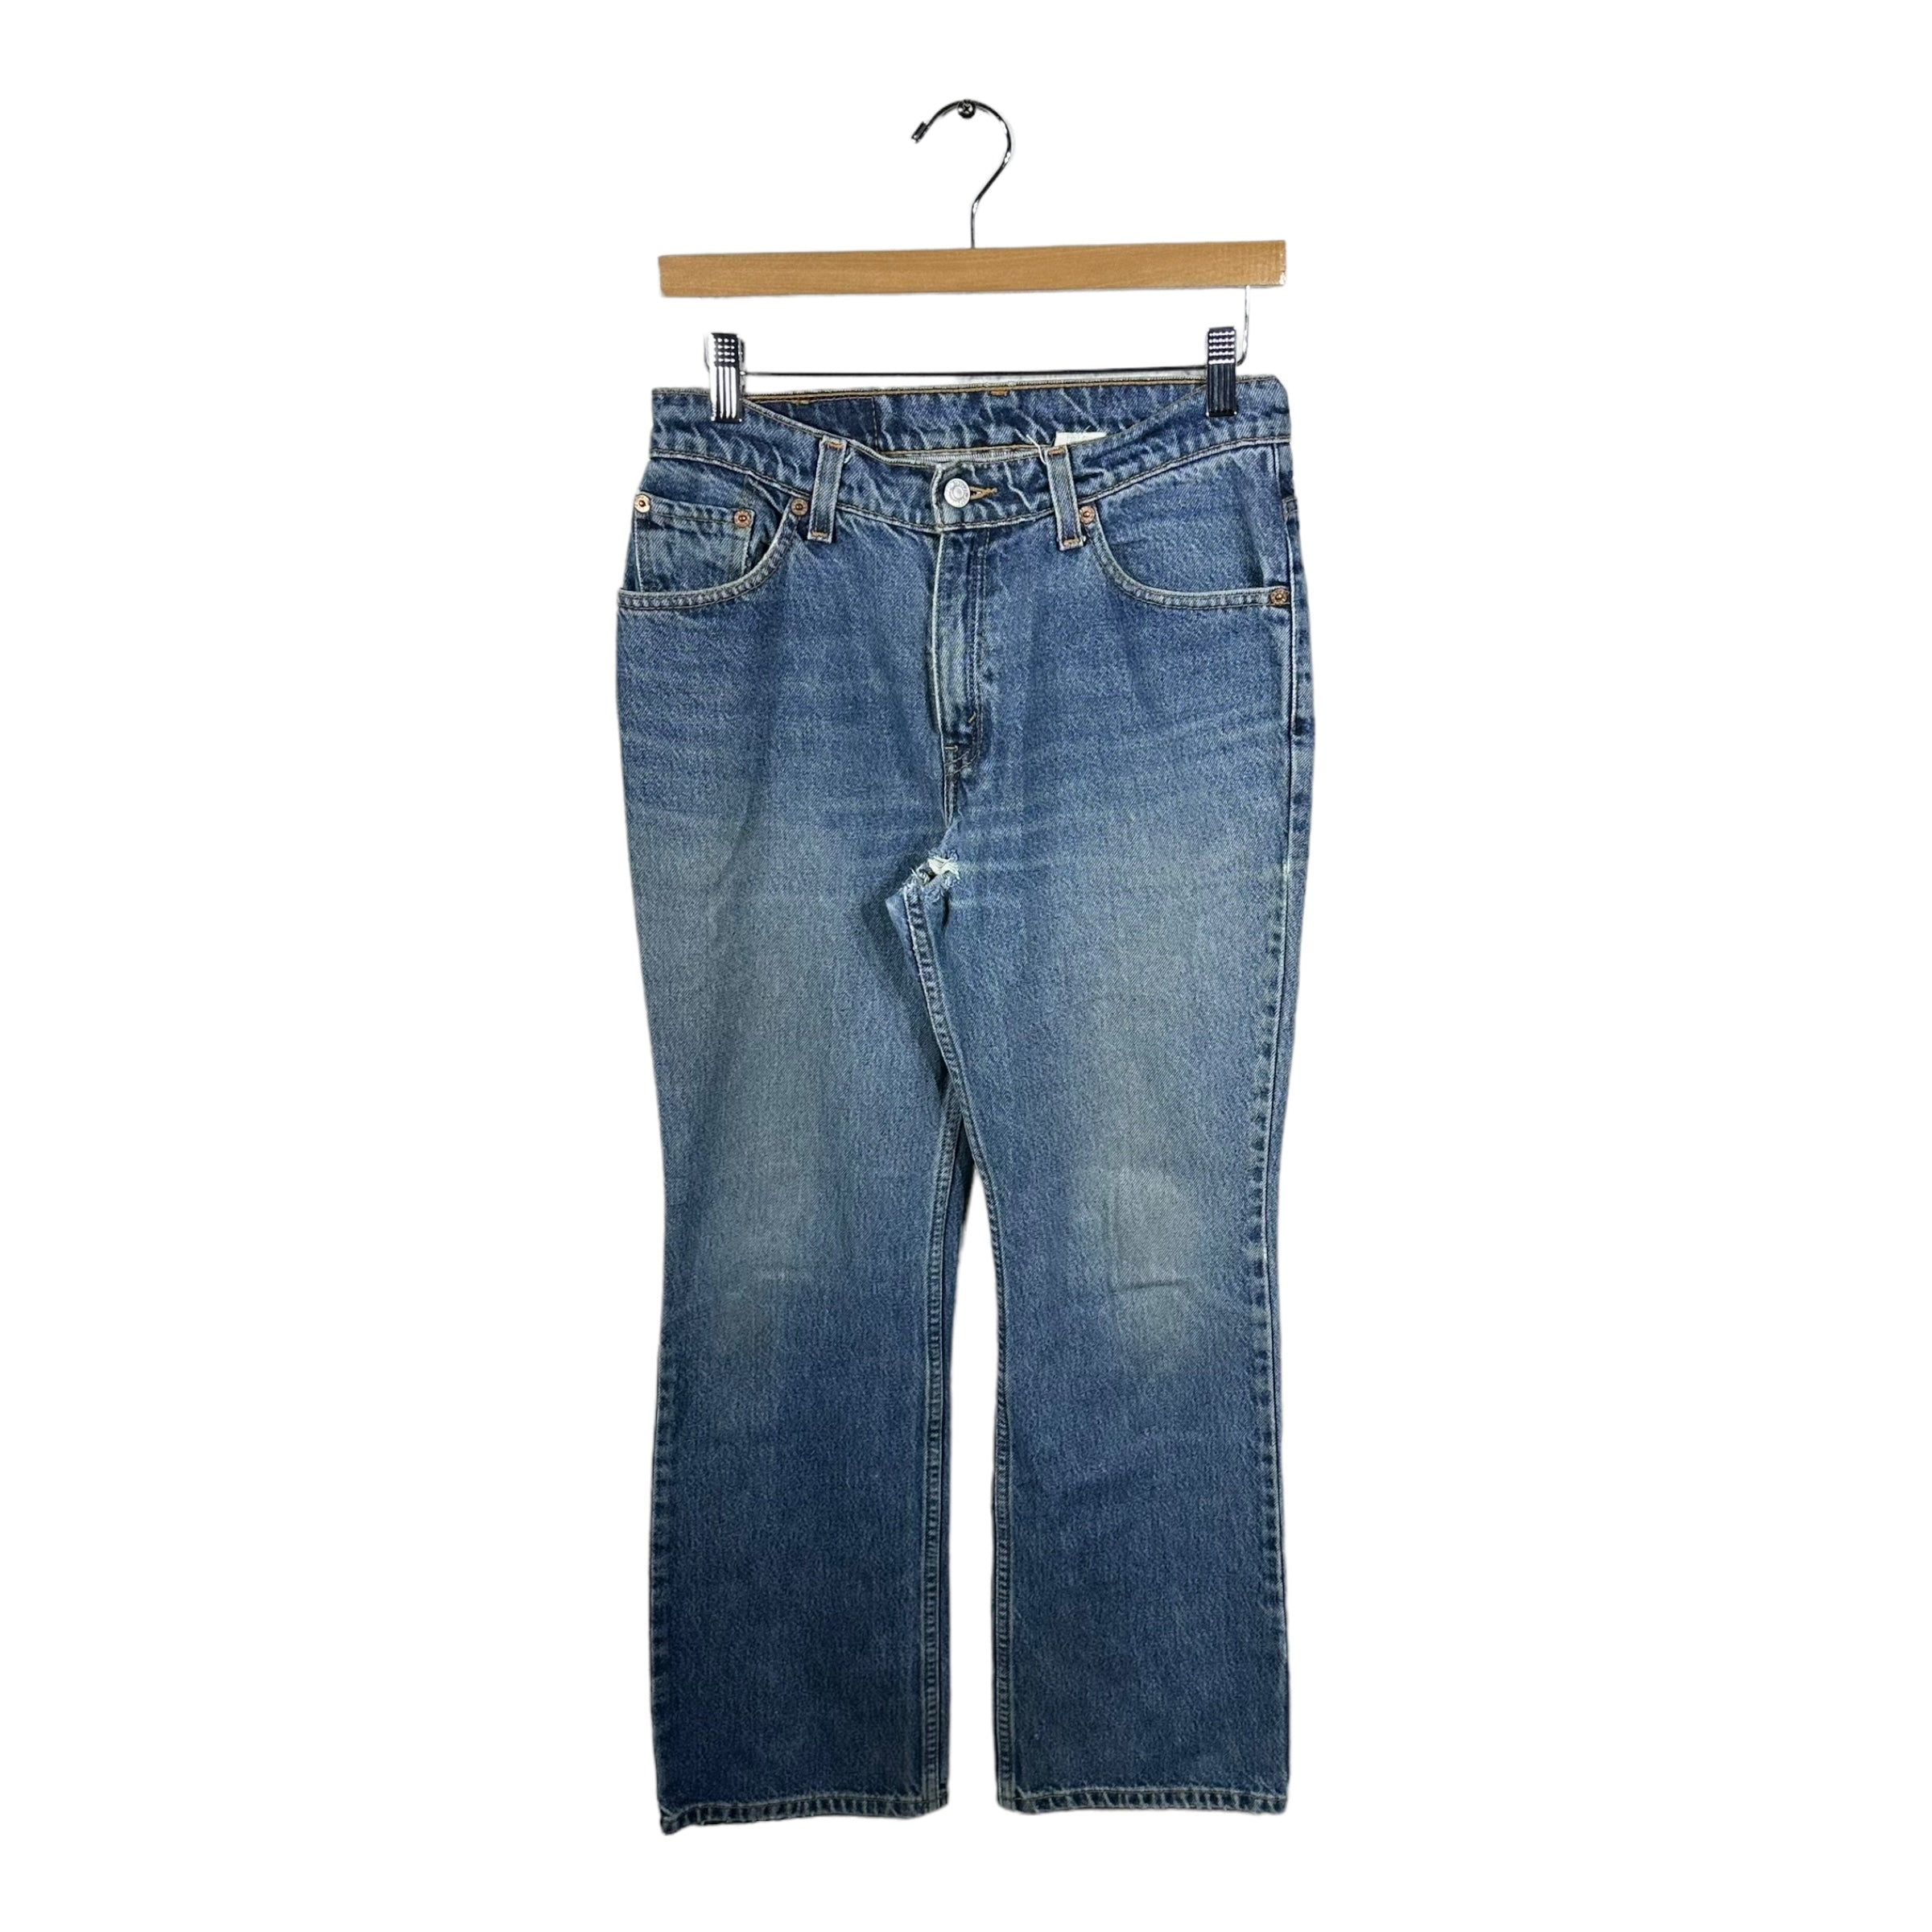 Vintage Levi's 517 Denim Jeans